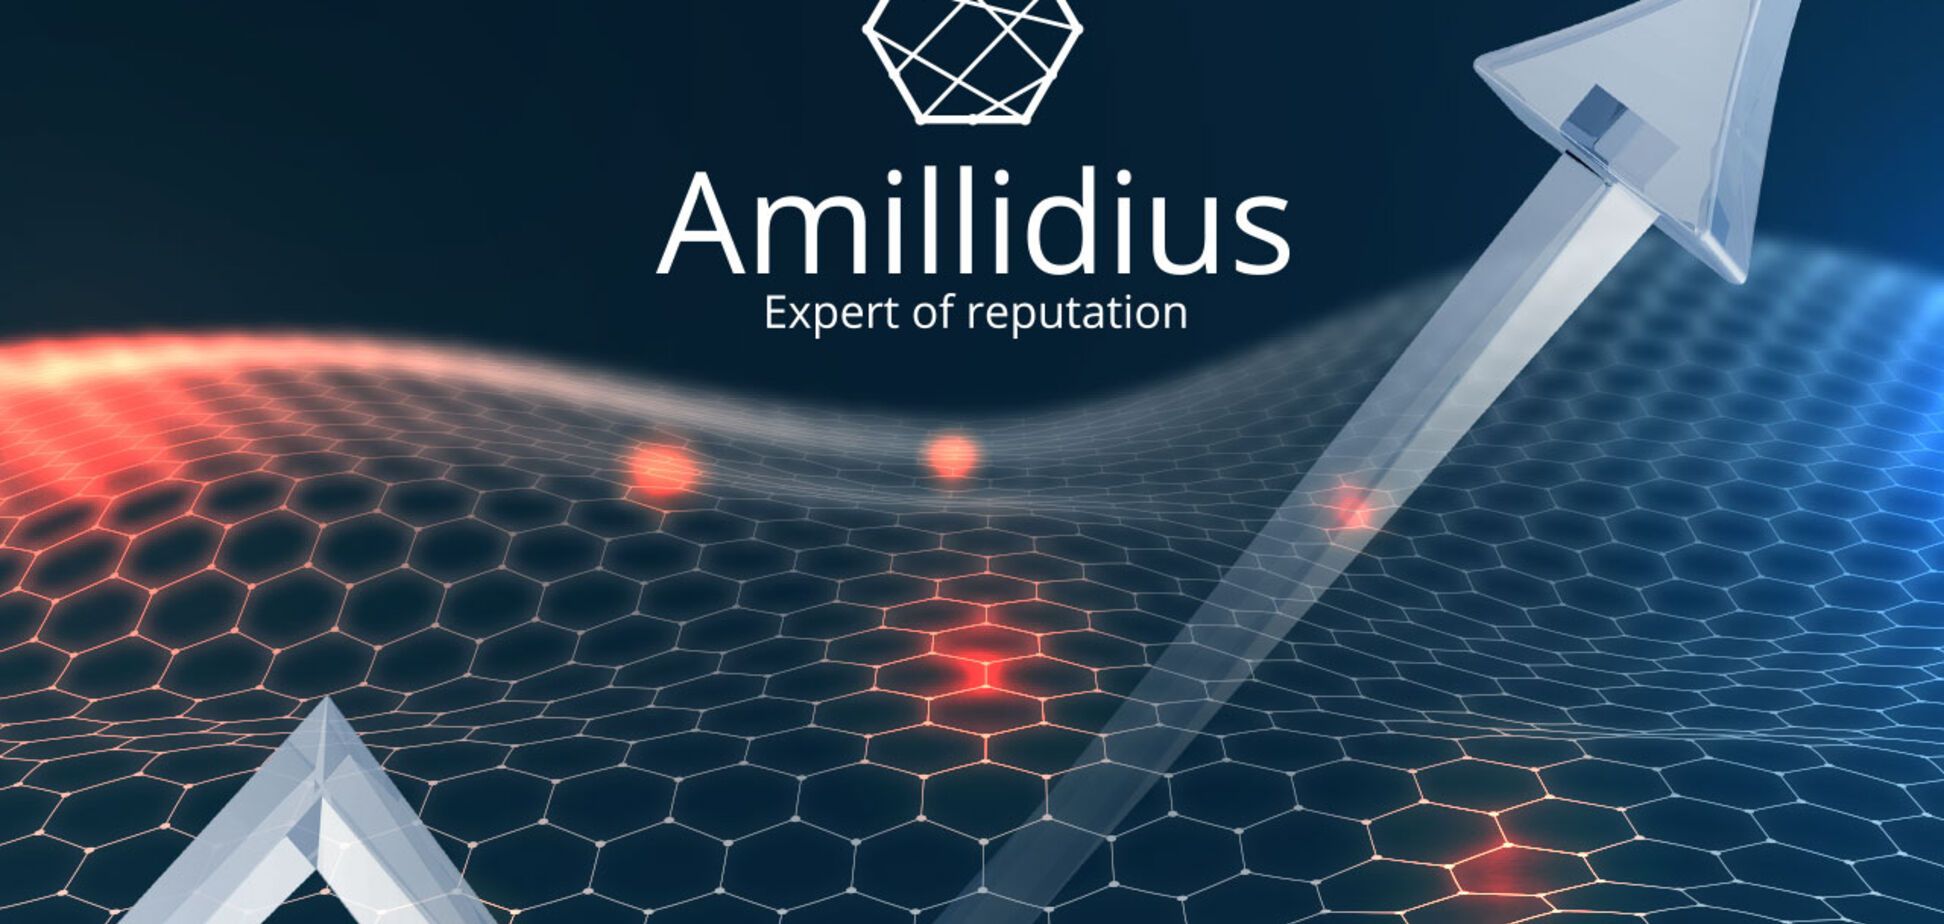 Лидогенерация от Amillidius (Амилид): клиент получает решение своей проблемы